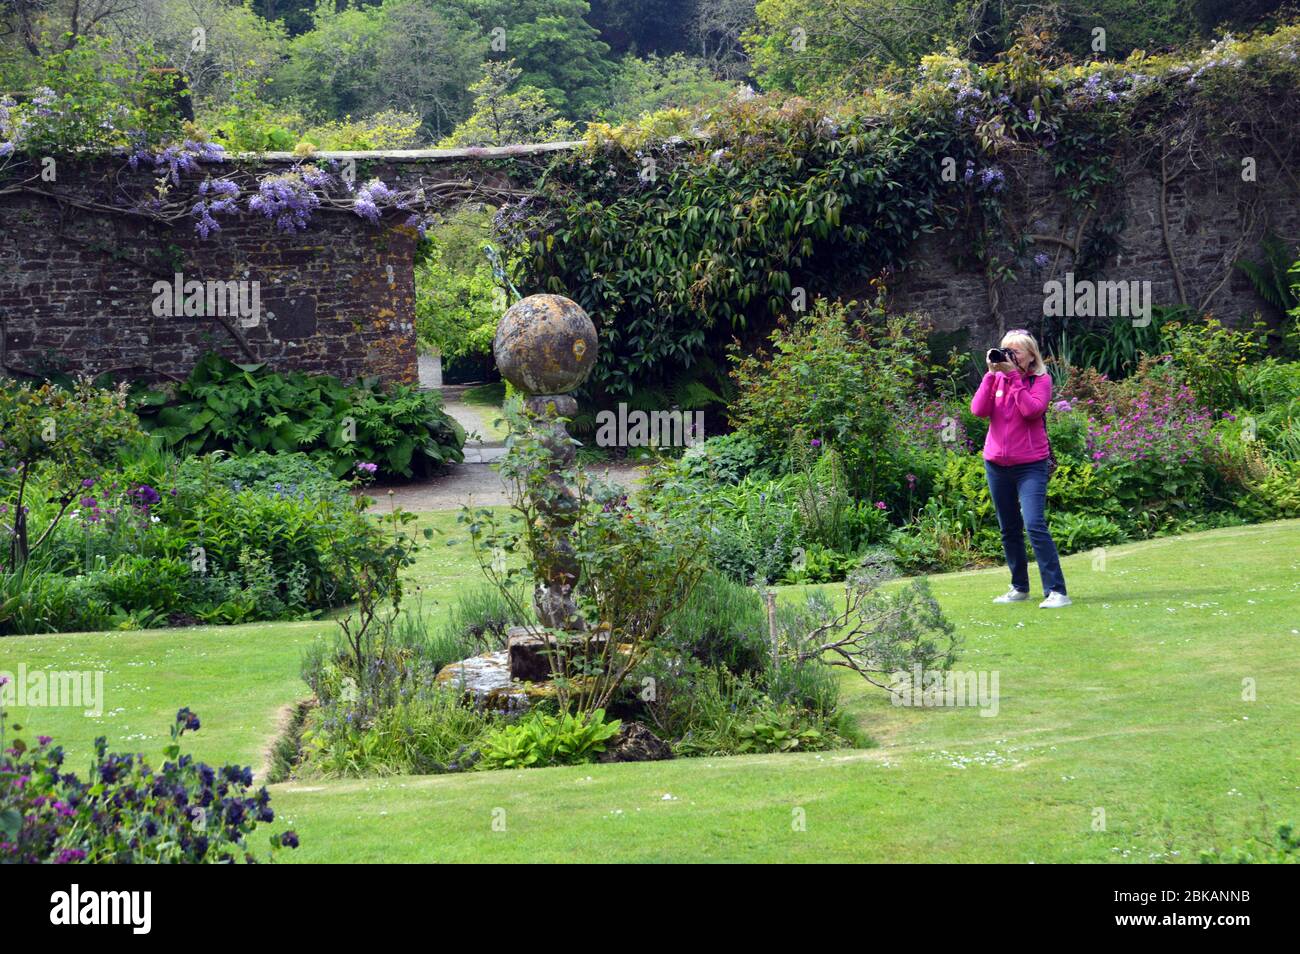 Femme prenant des photos de la sculpture en pierre d'un cadran solaire dans le jardin clos à l'abbaye de Hartland Estate et les jardins, North Devon. Angleterre, Royaume-Uni. Banque D'Images